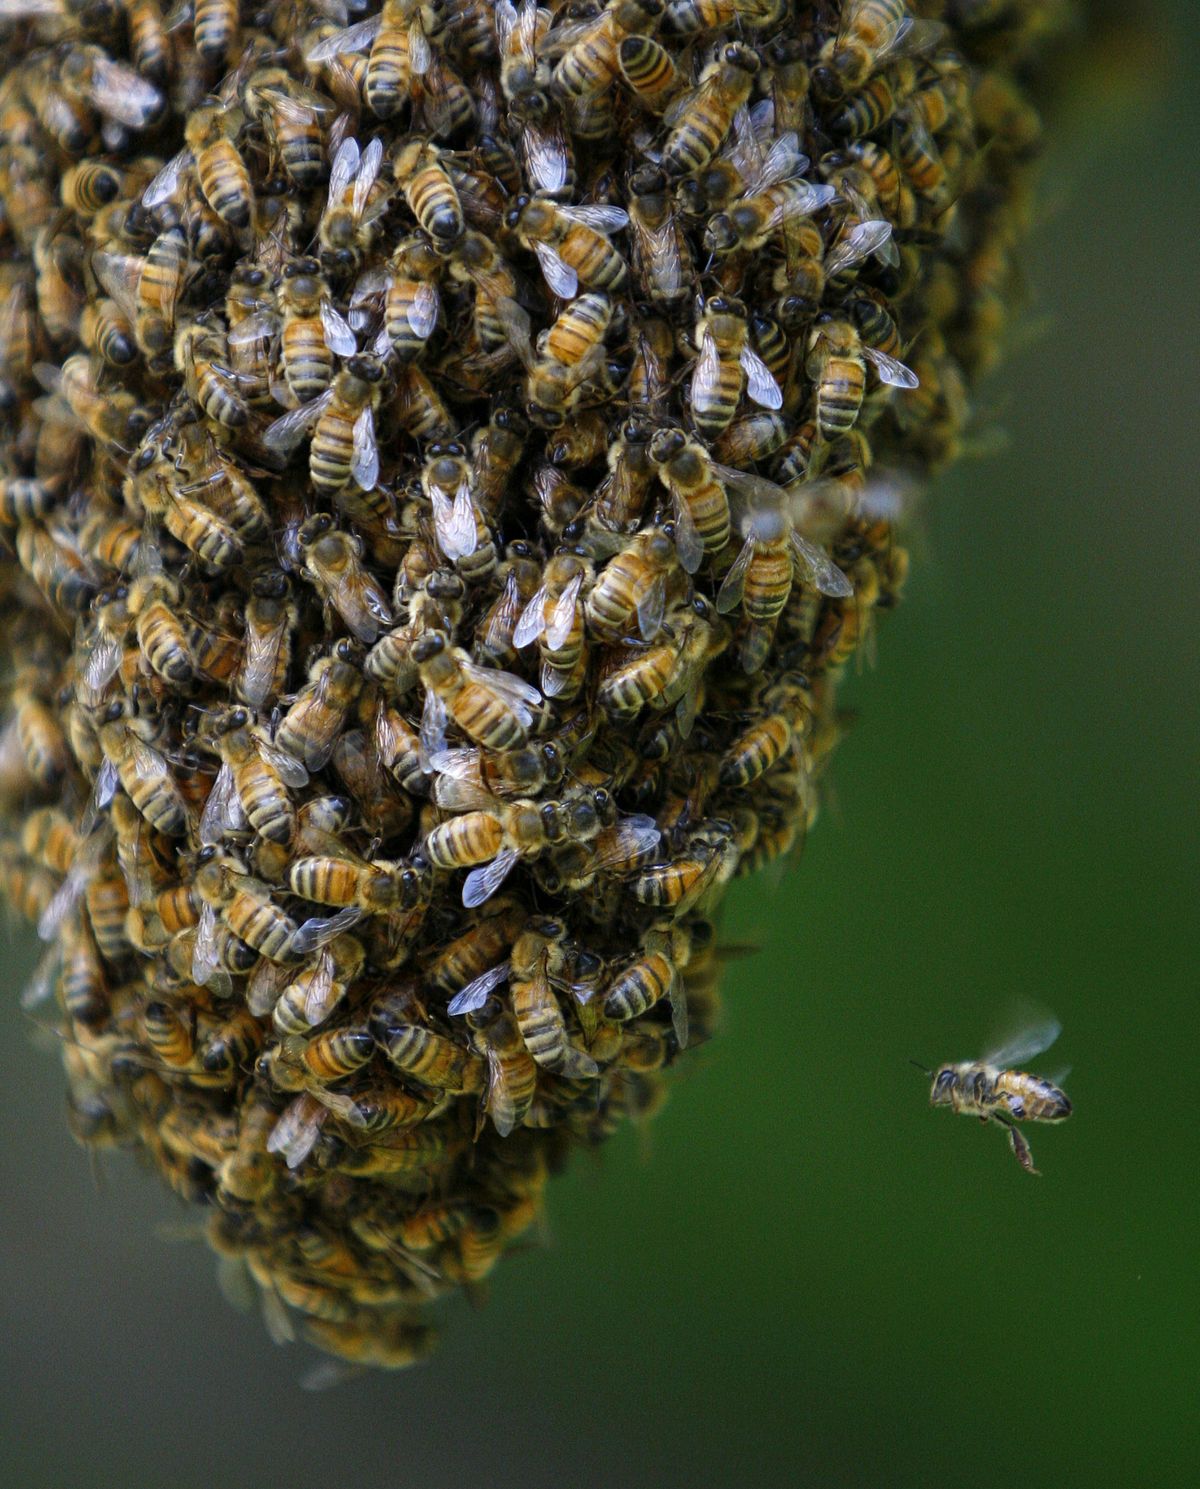 Honeybee swarm on a tree branch in Billings June 1. (Associated Press)